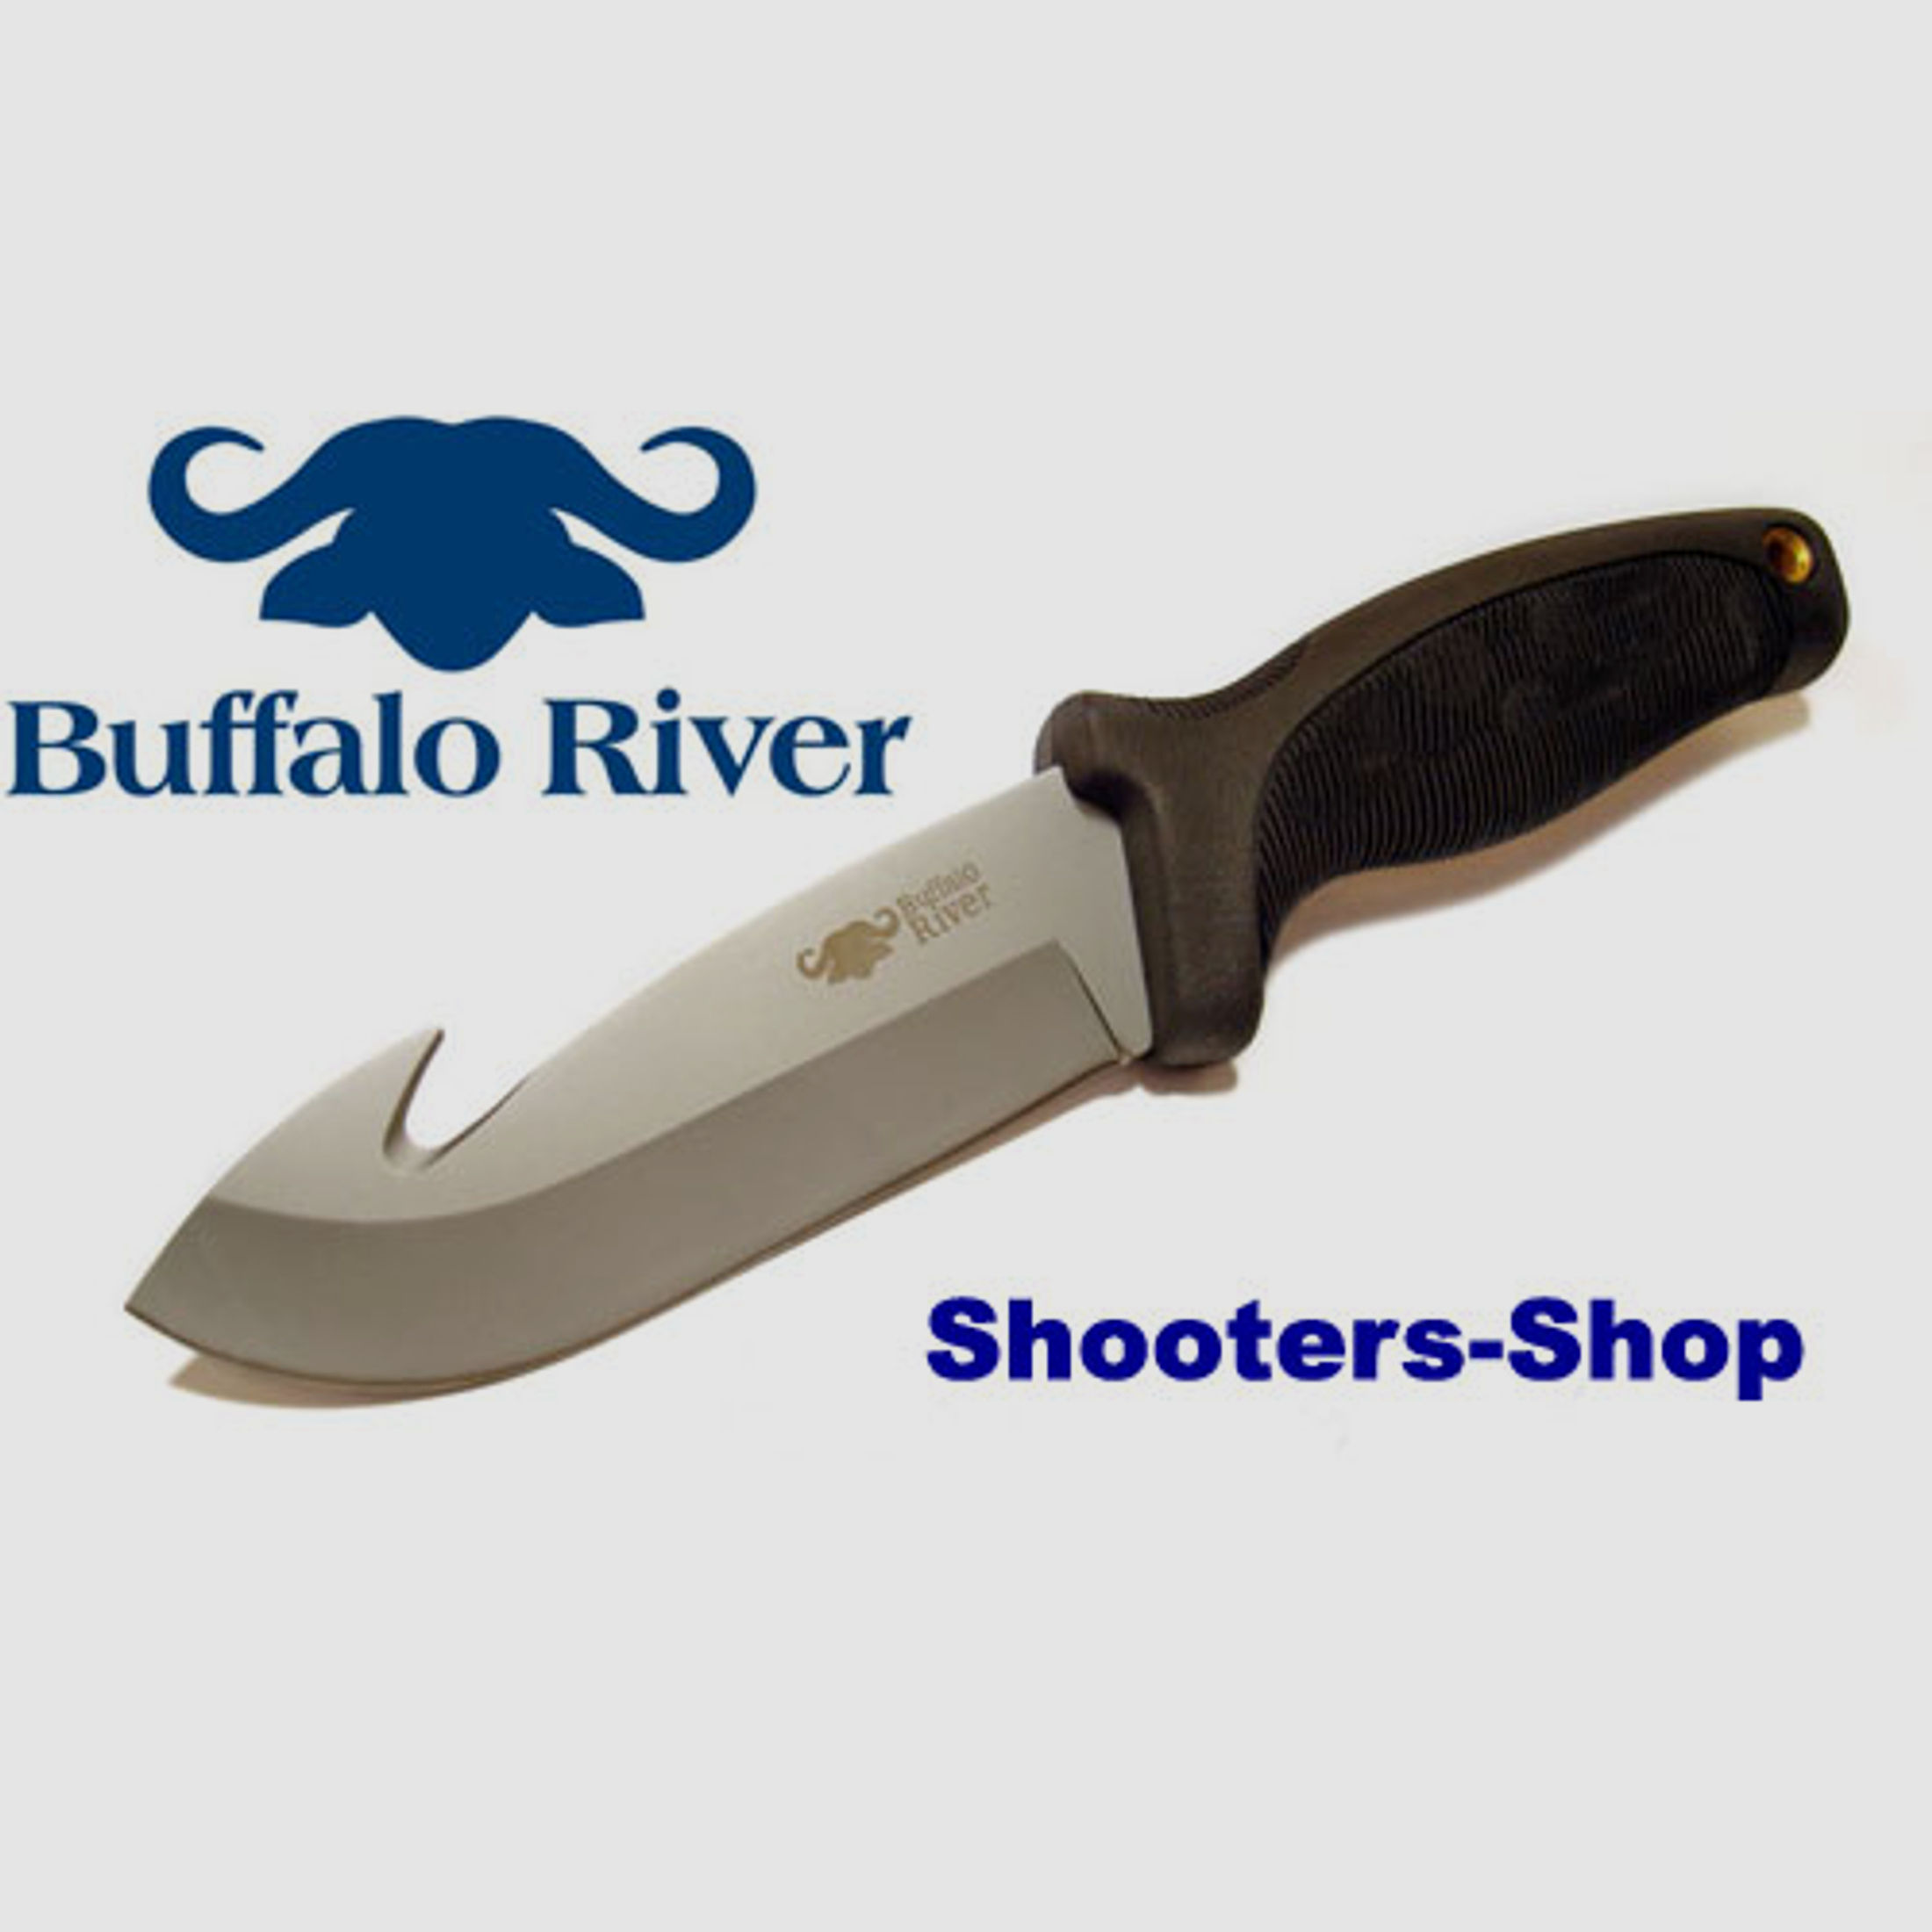 Buffalo~River Jagdmesser BRKM-105 mit Aufbruchklinge Stainless-Steel